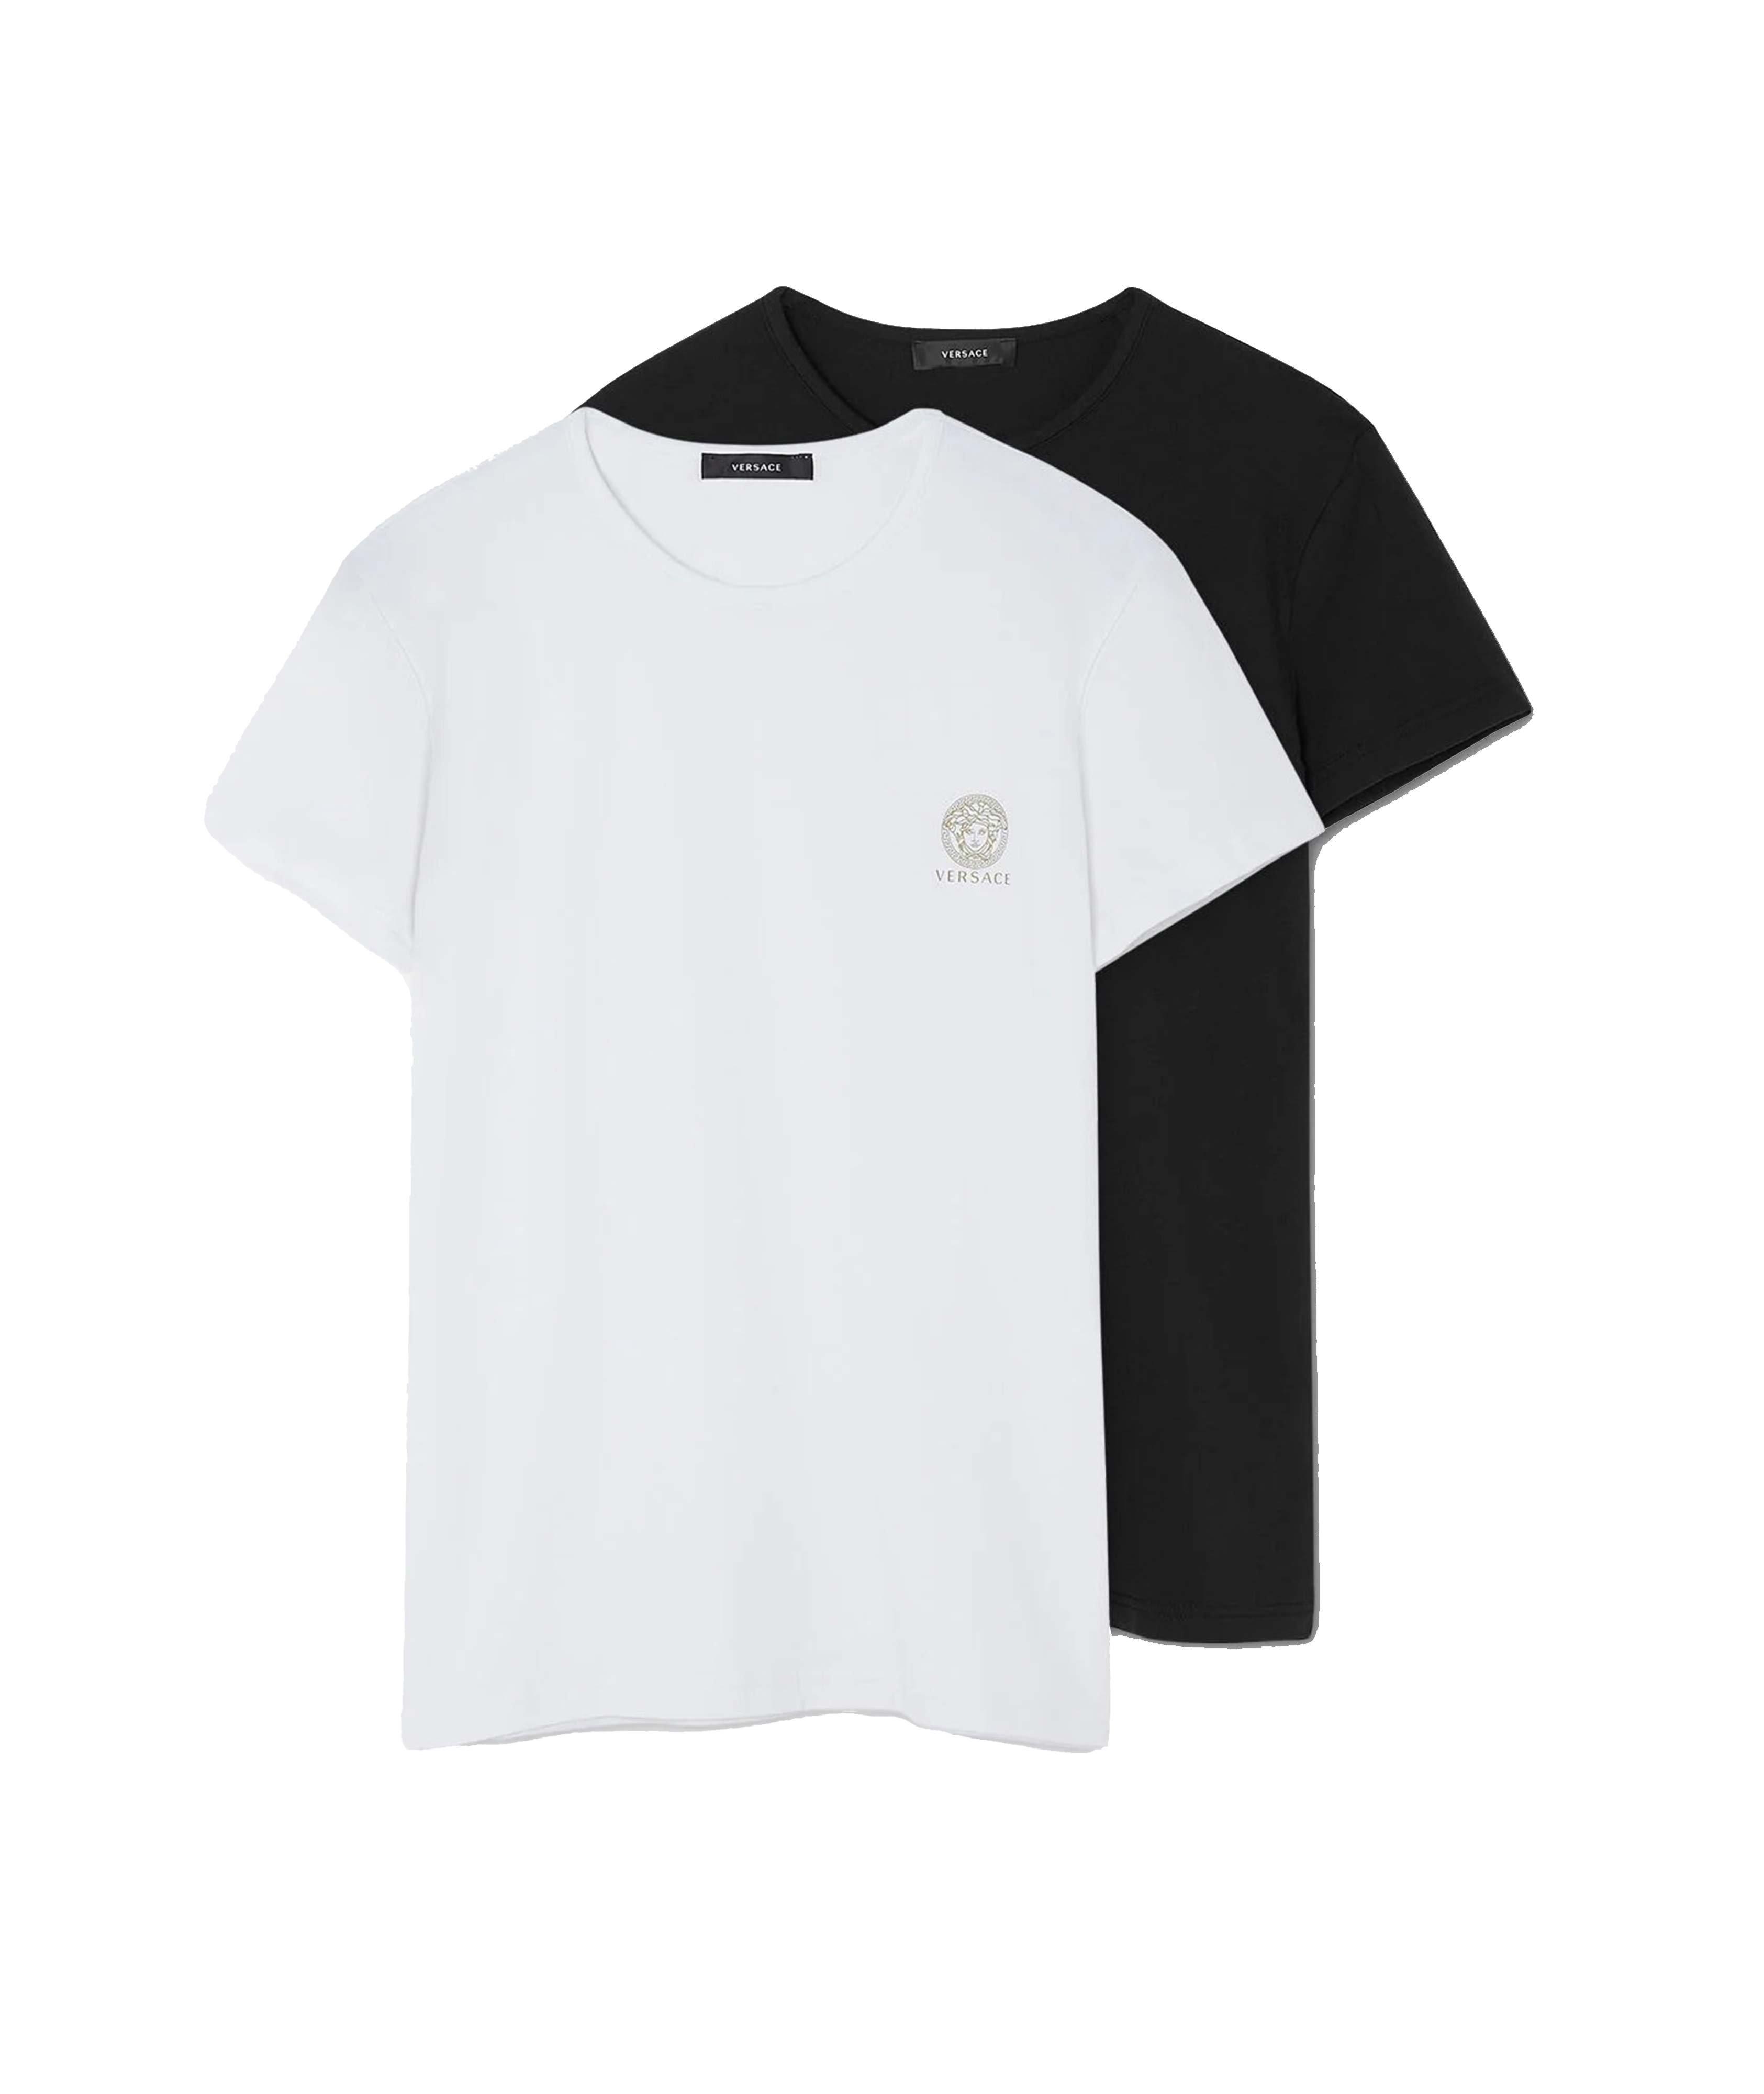 T-shirt en coton extensible avec logo de Méduse image 0